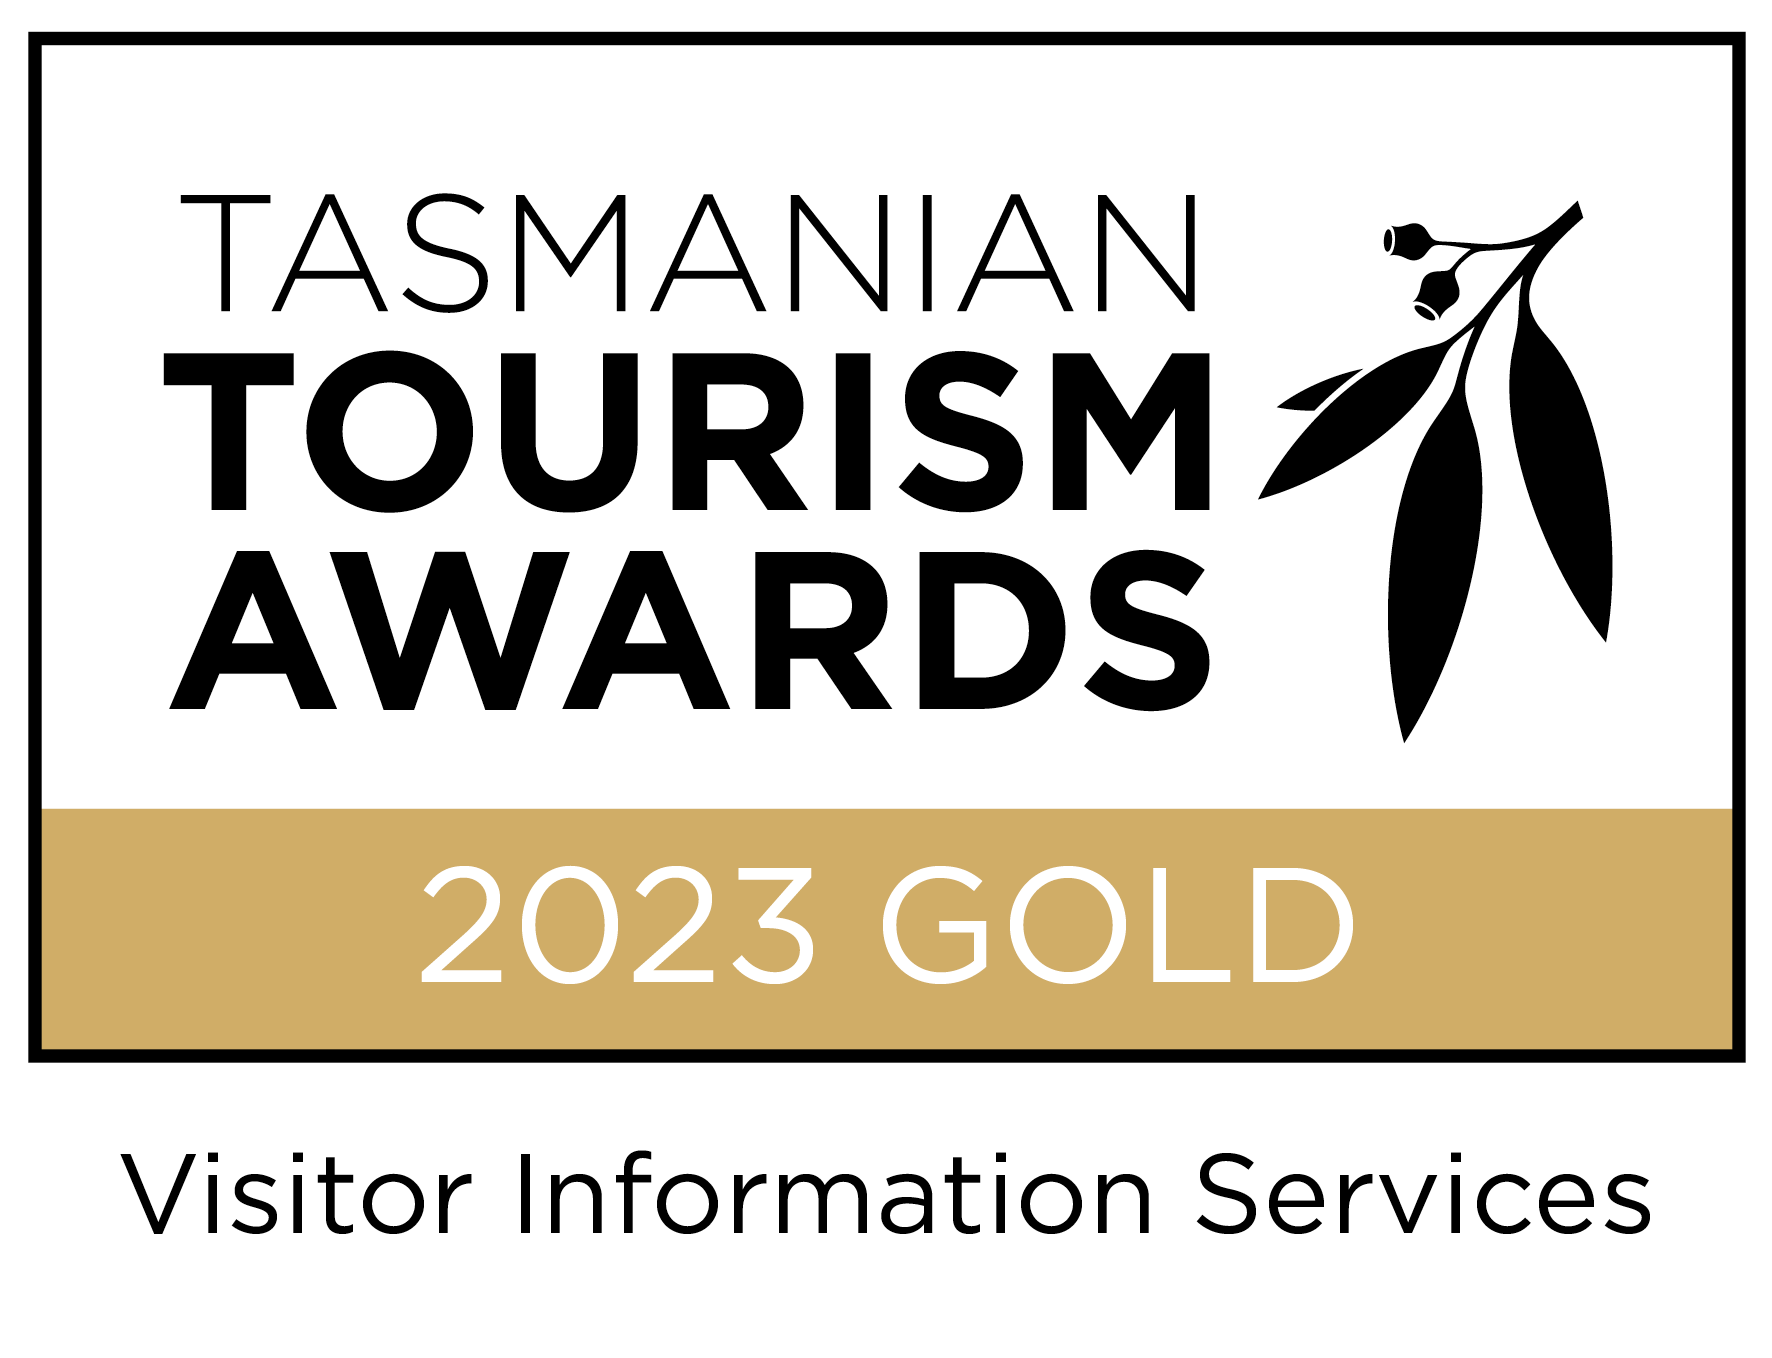 2023 Tasmanian Tourism Awards Gold Visitor Information Services